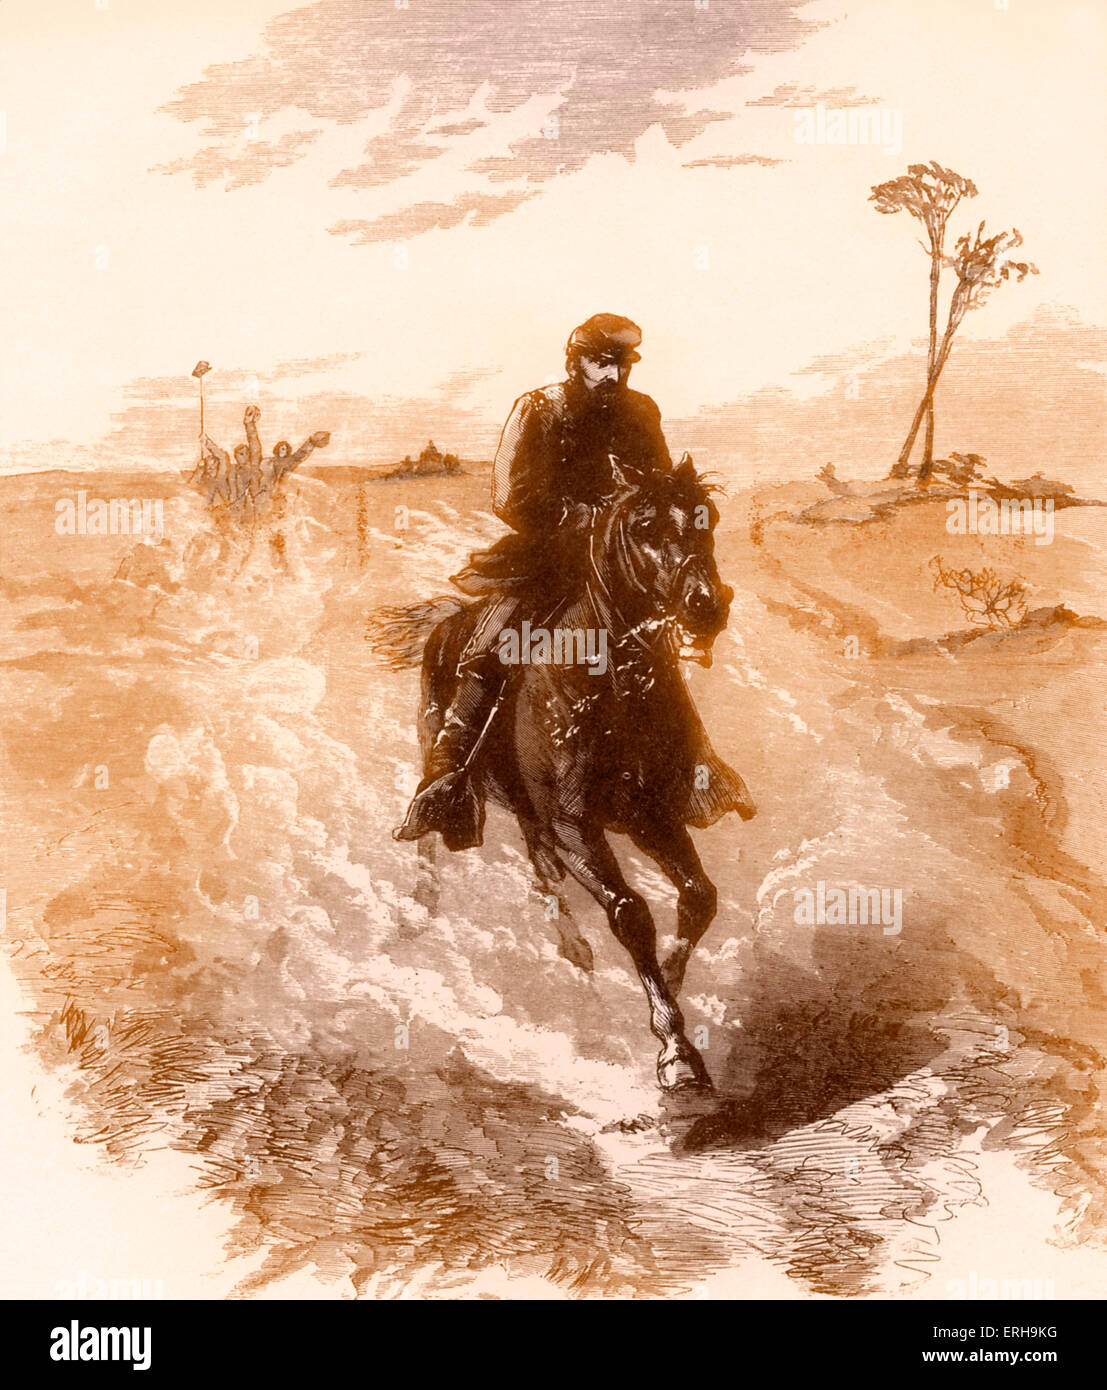 La guerra civile americana Unione generale Philip Sheridan cavalca verso la parte anteriore. Illustrazione di Sol Eytinge (1833-1905), 1860s. Foto Stock